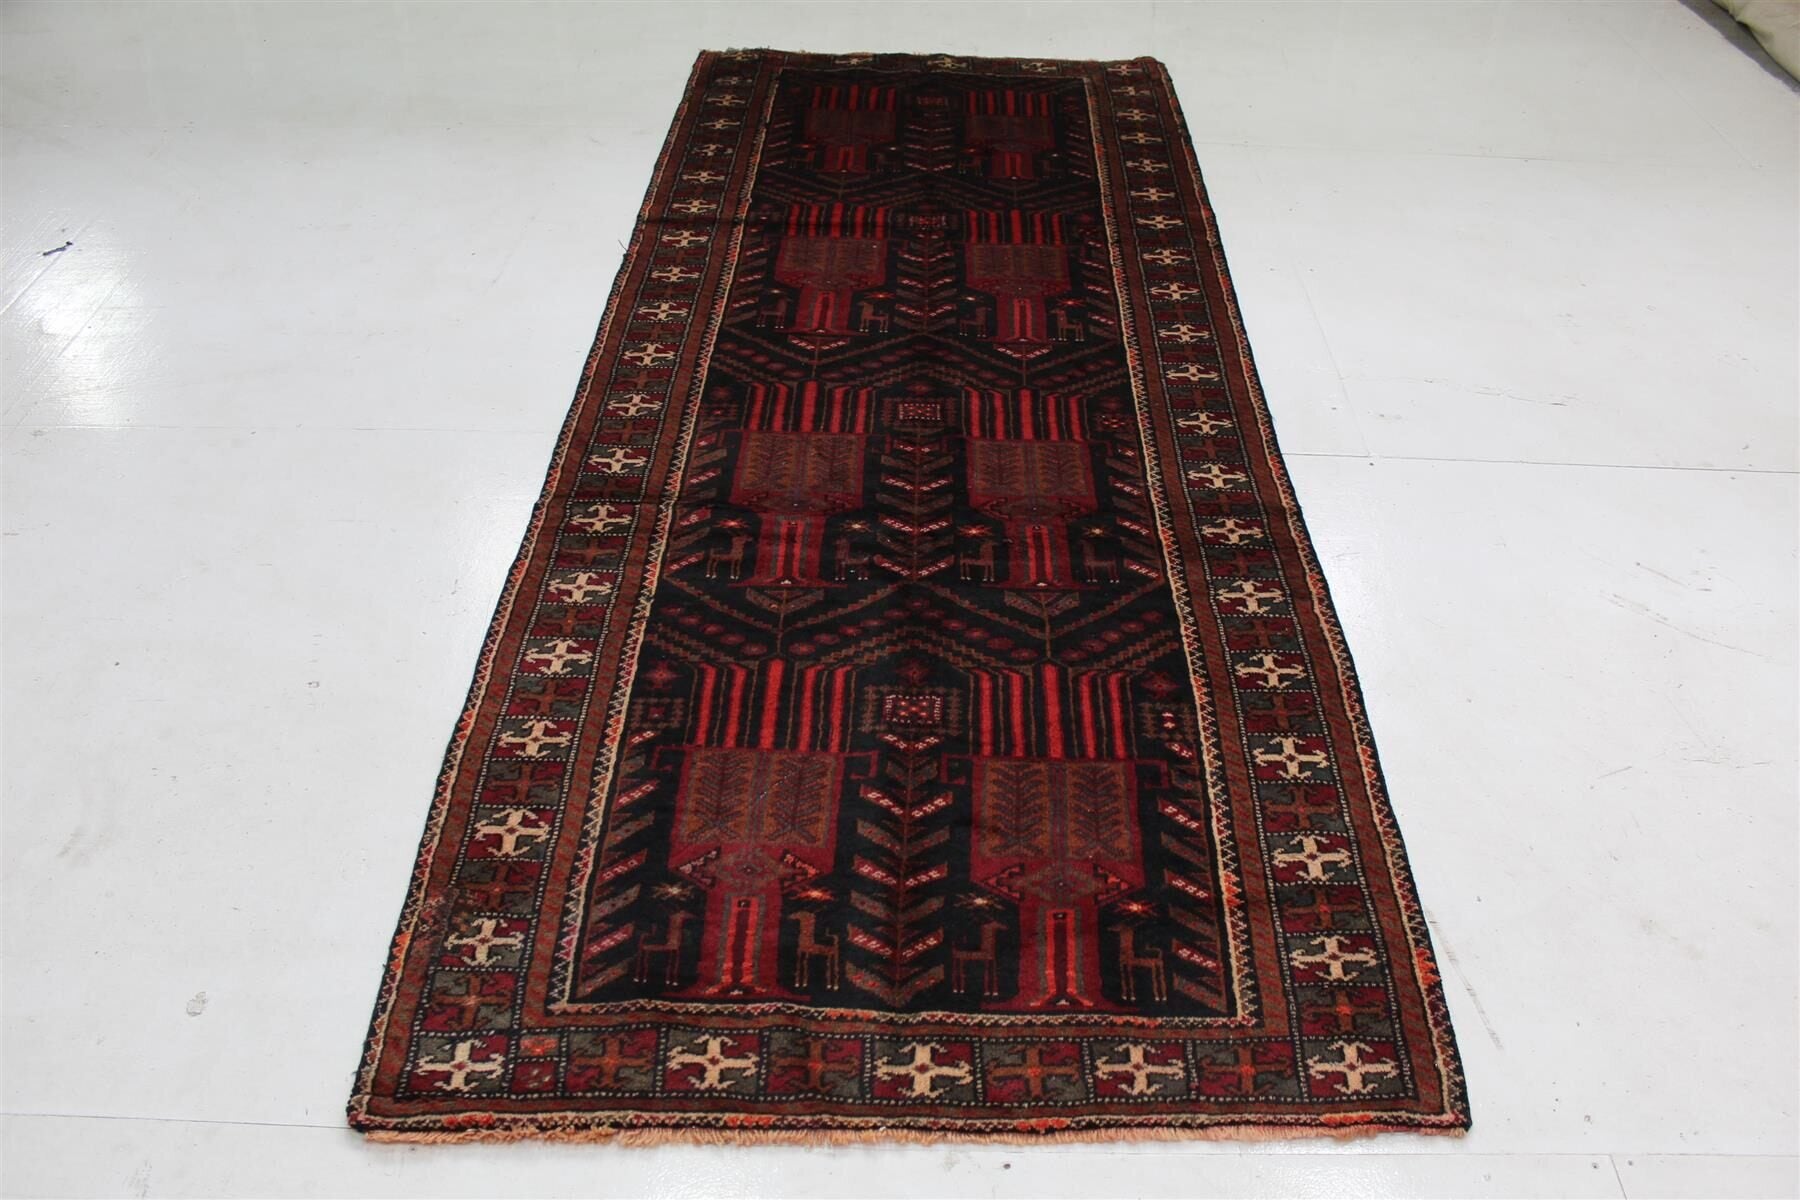 Lovely Traditional Antique Red & Black Handmade Wool Runner